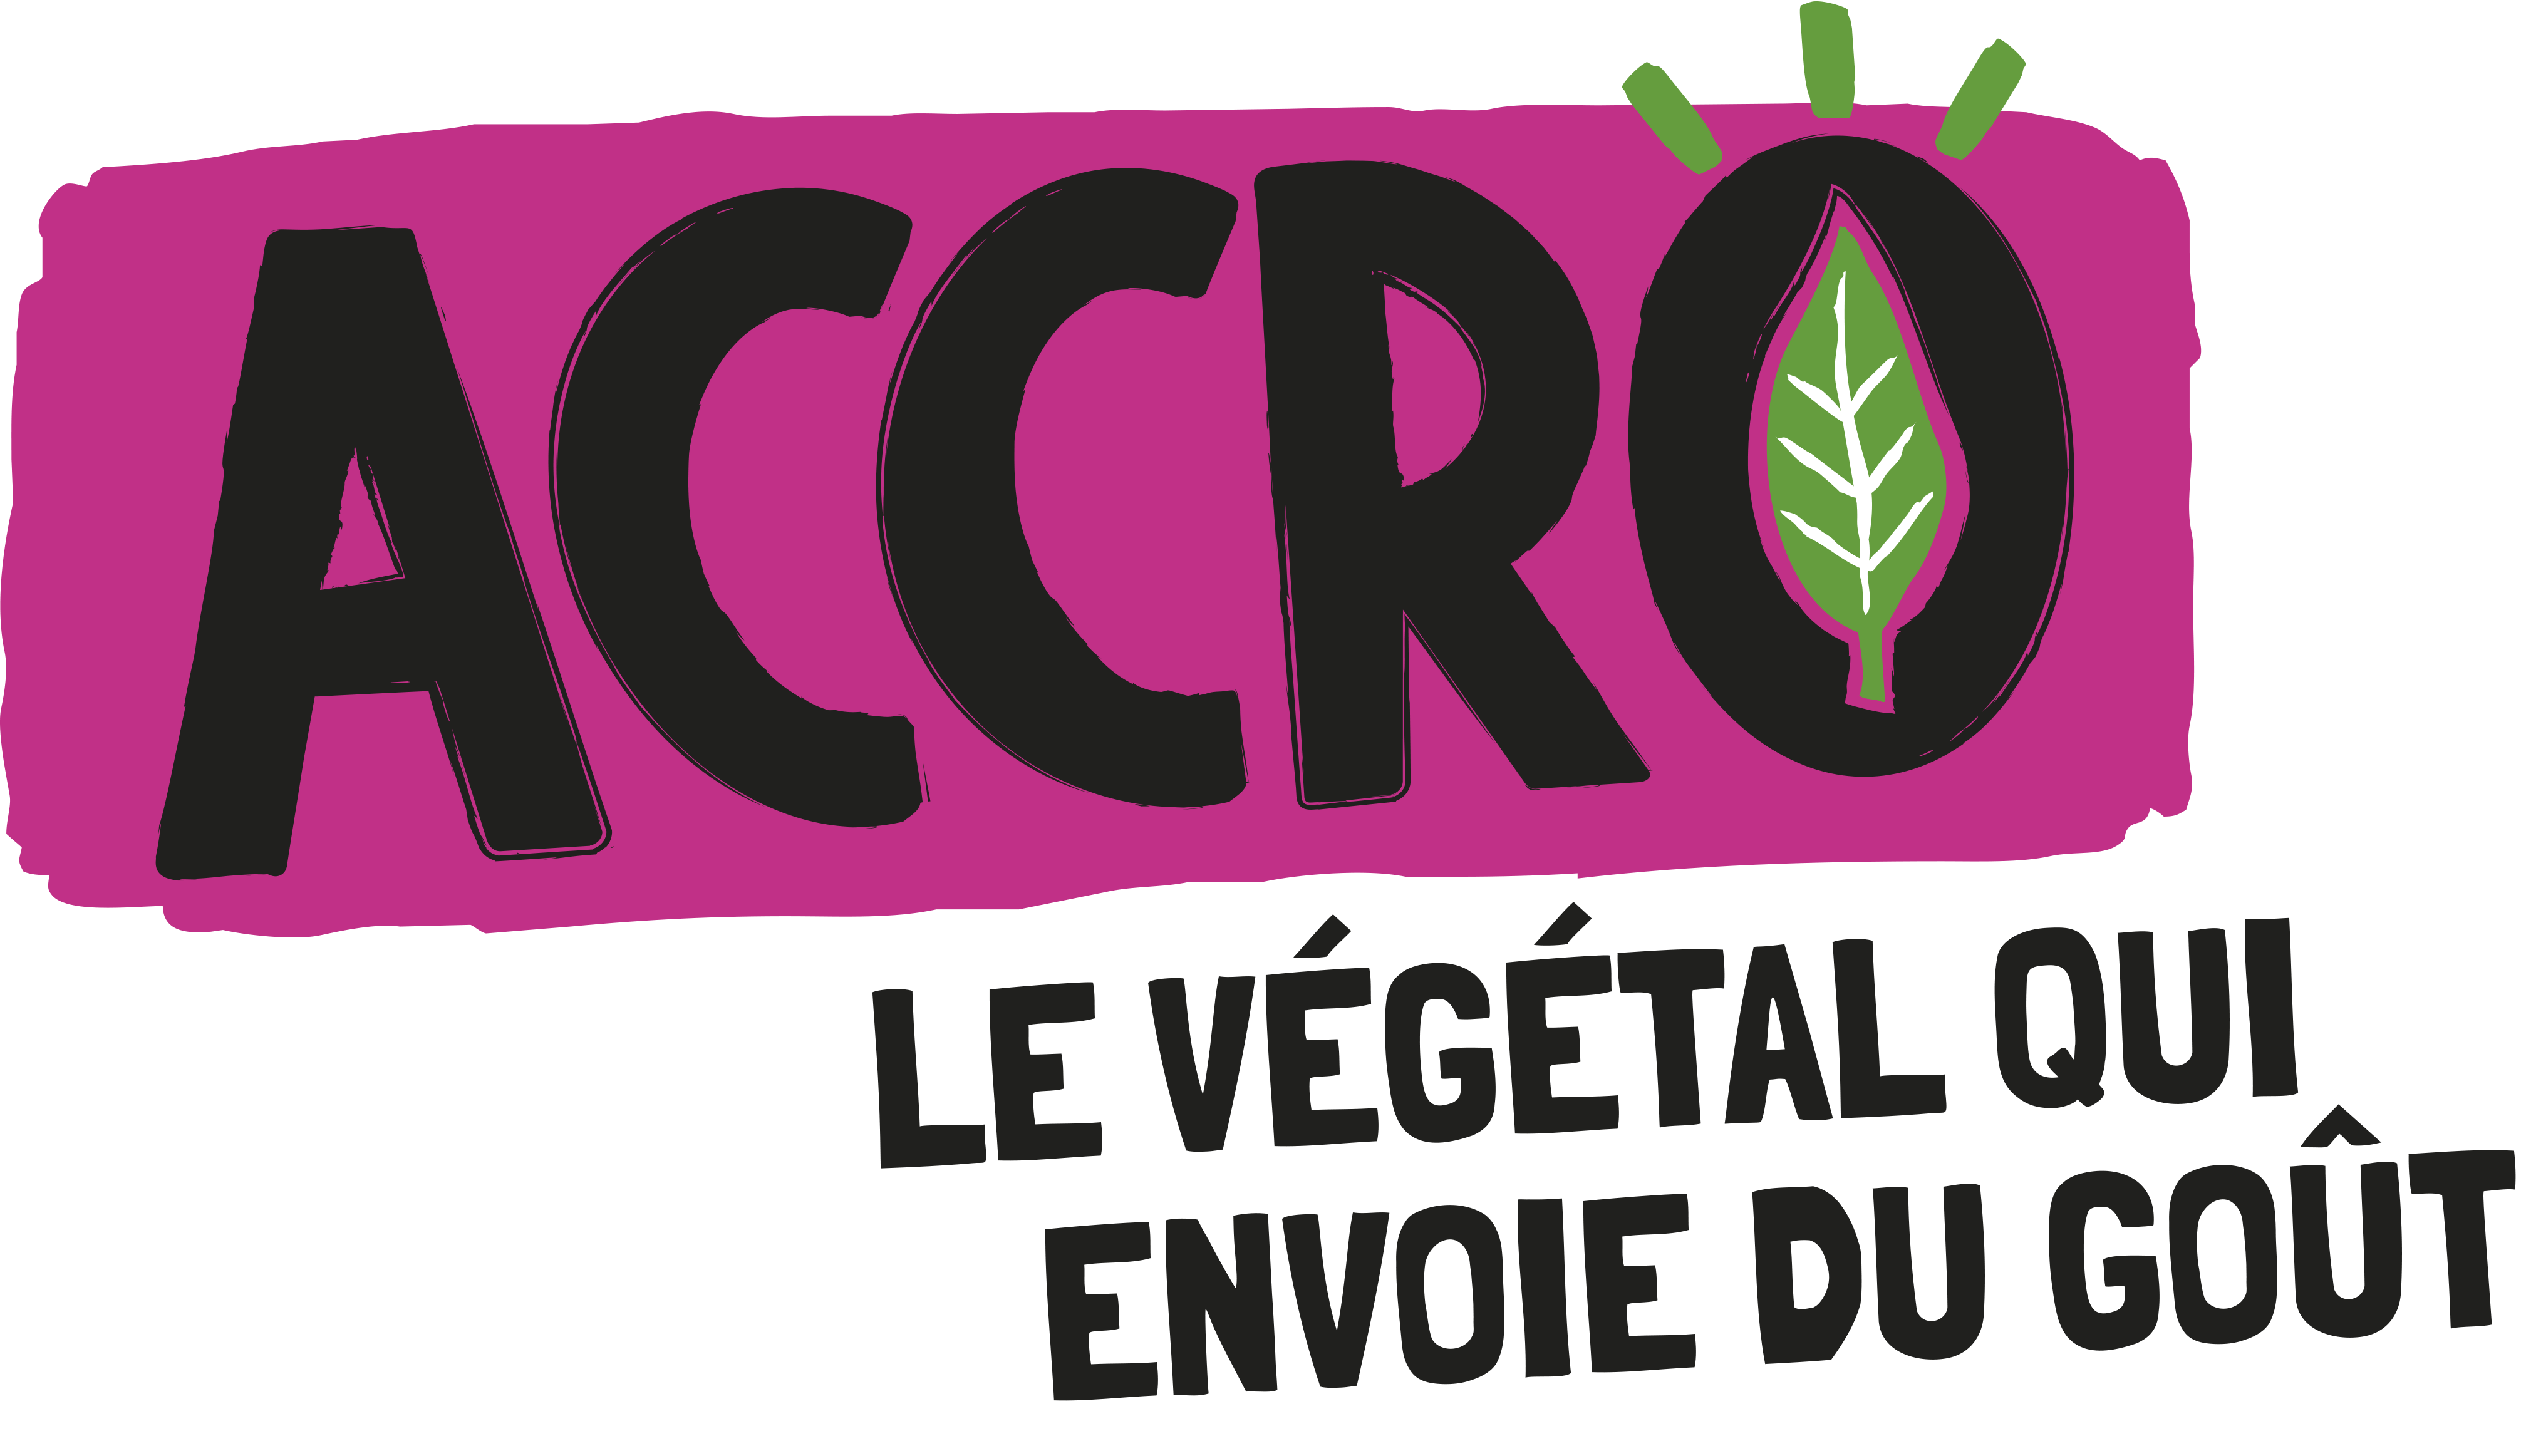 (c) Accro.fr